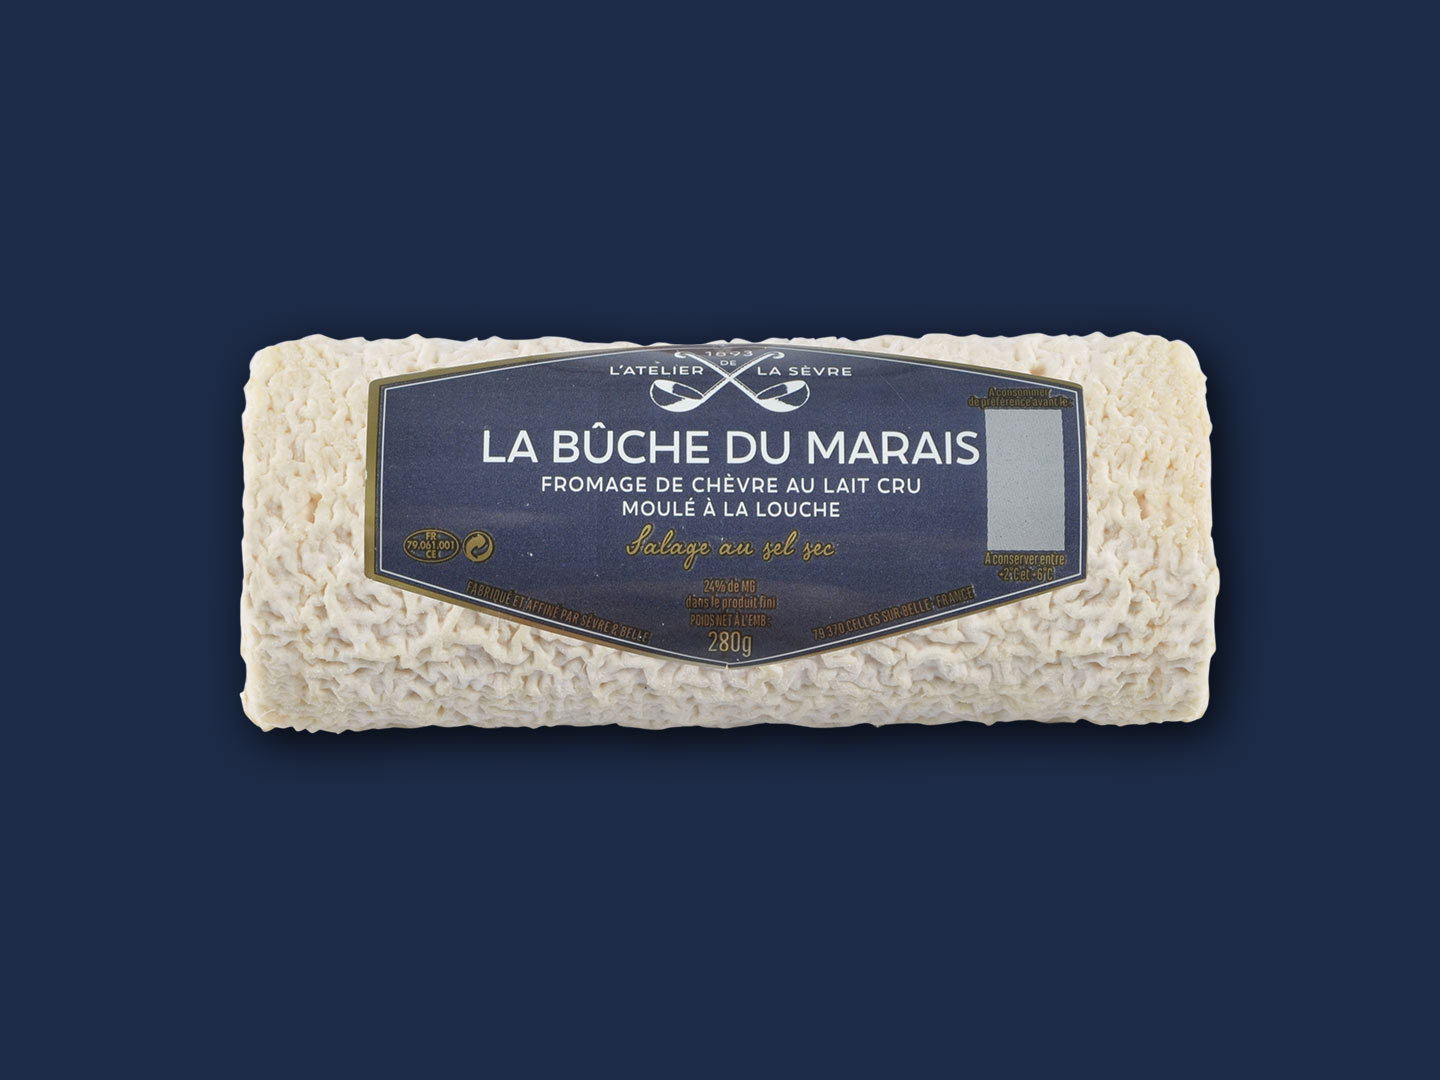 La bûche du Marais 280g - fromage de chèvre - lait cru - moulé louche - Atelier de la sèvre